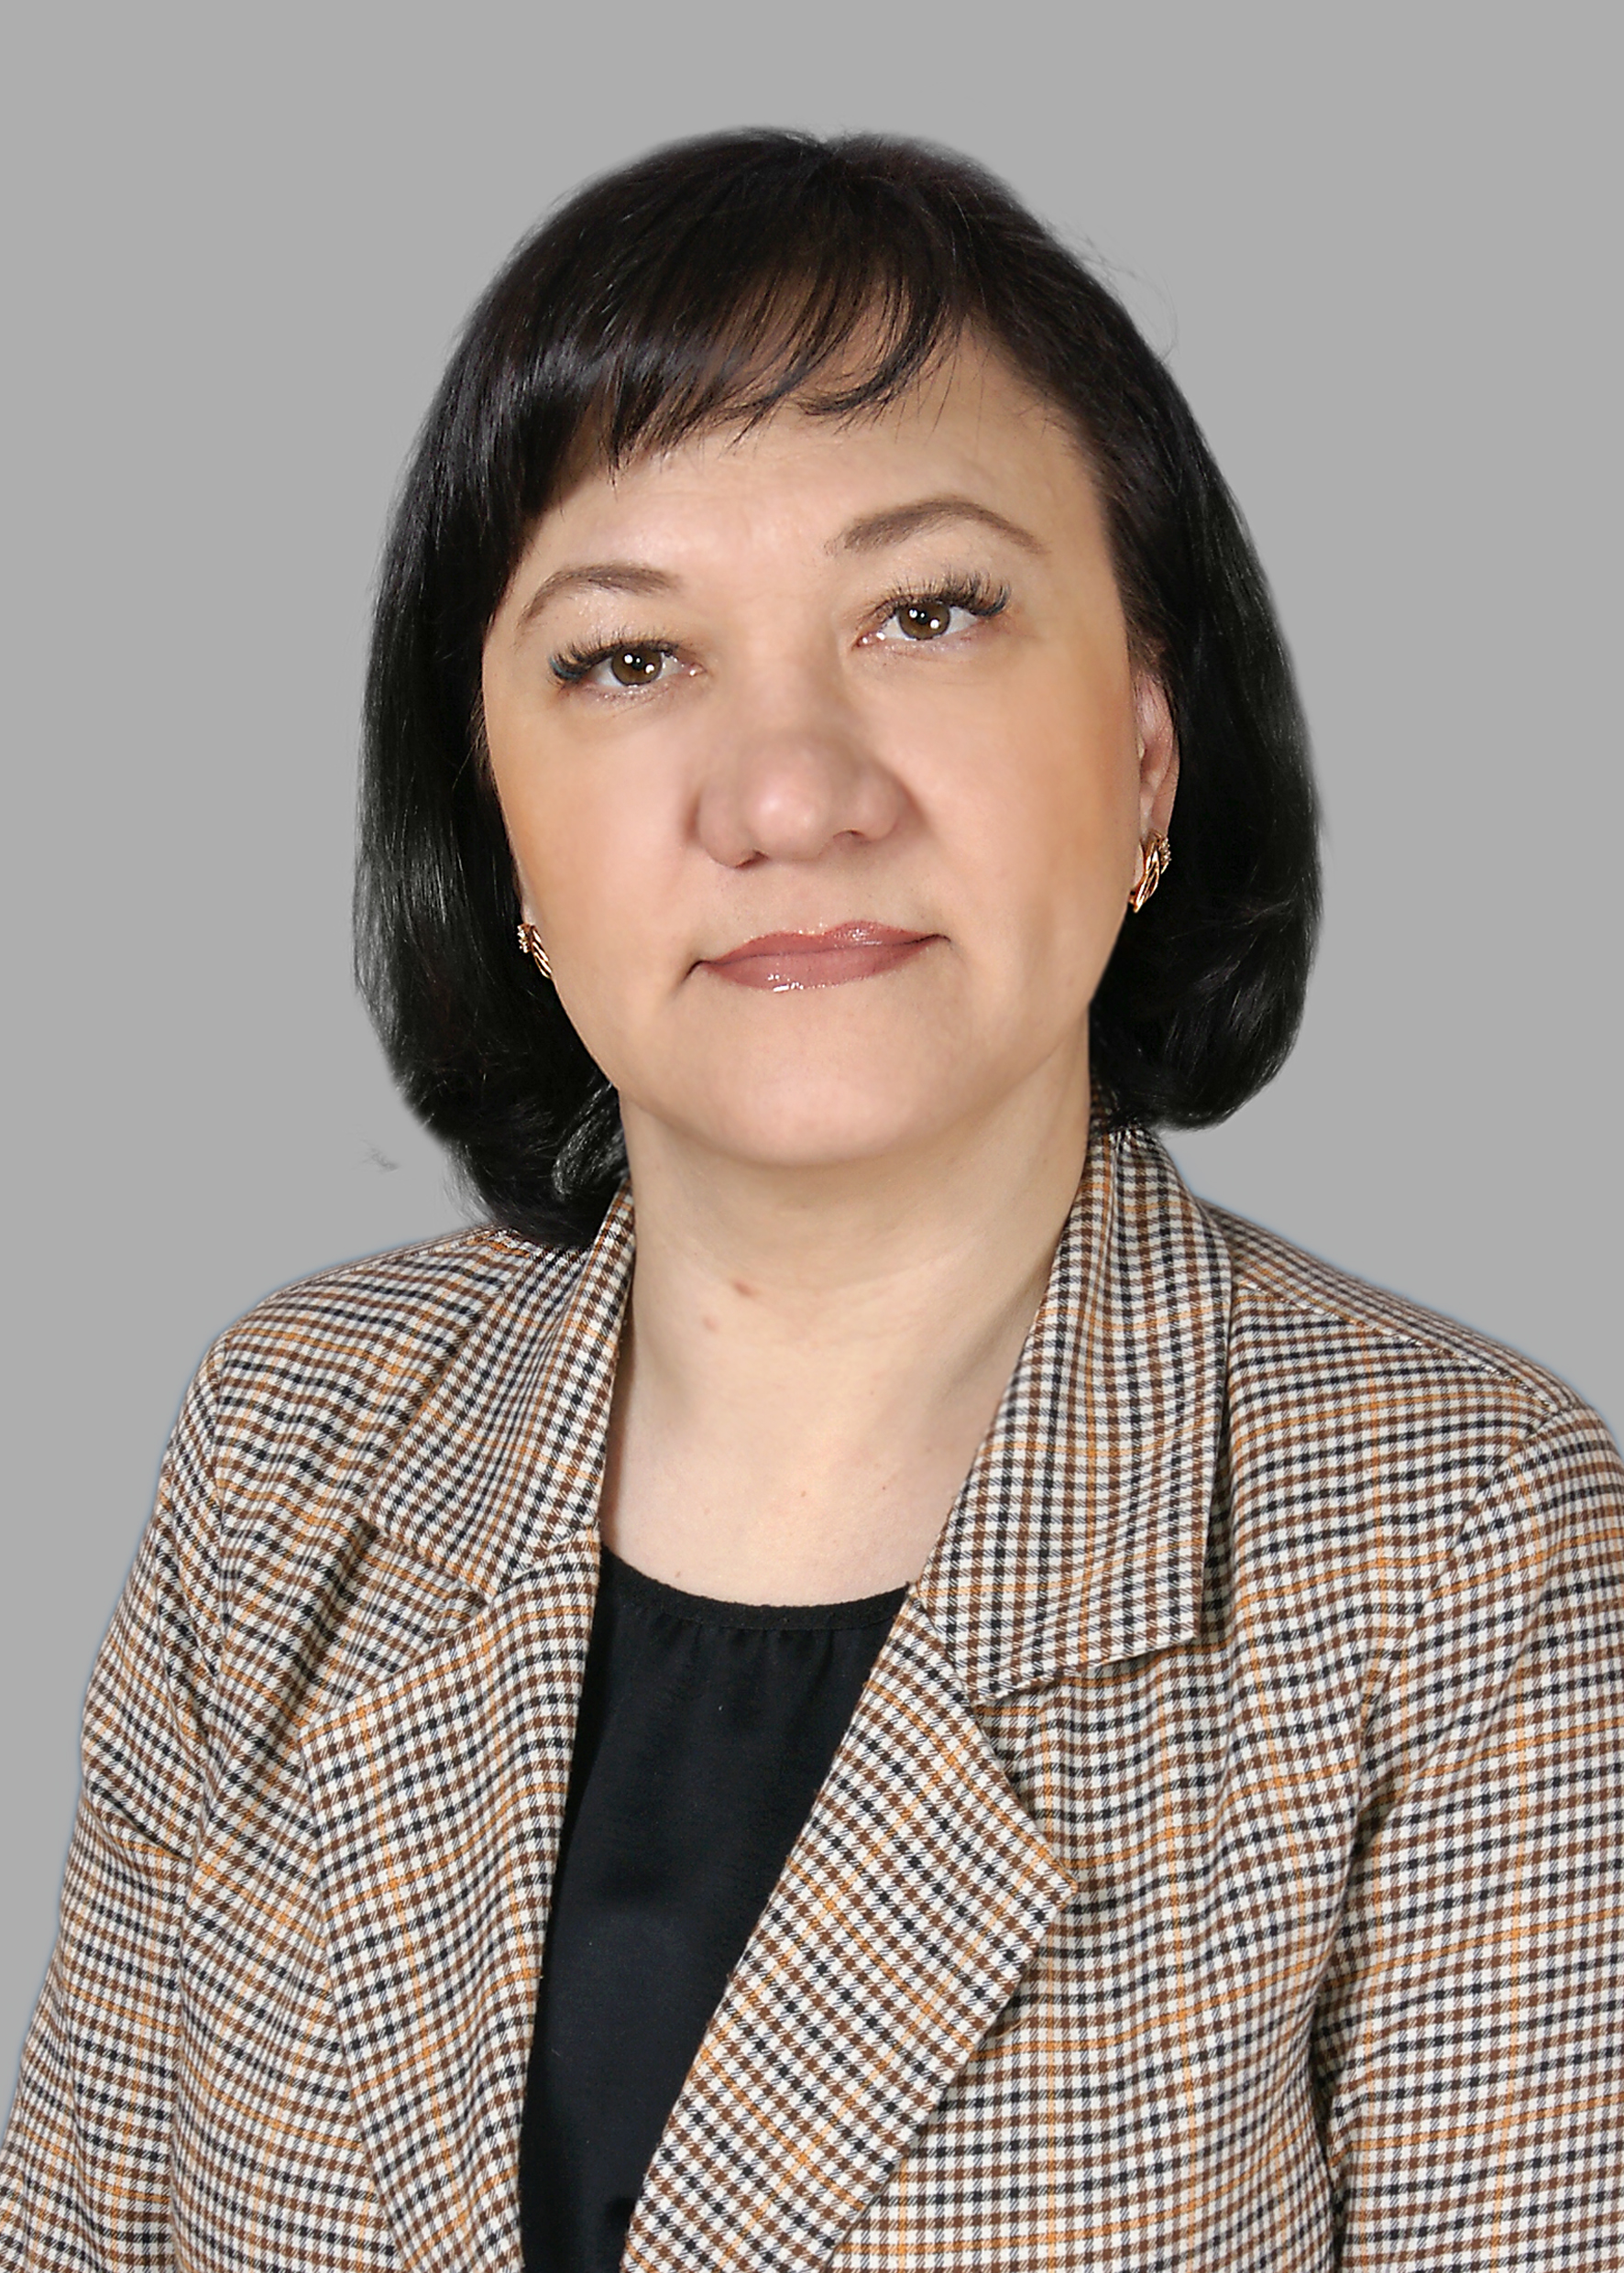 Ватутина Ольга Николаевна.